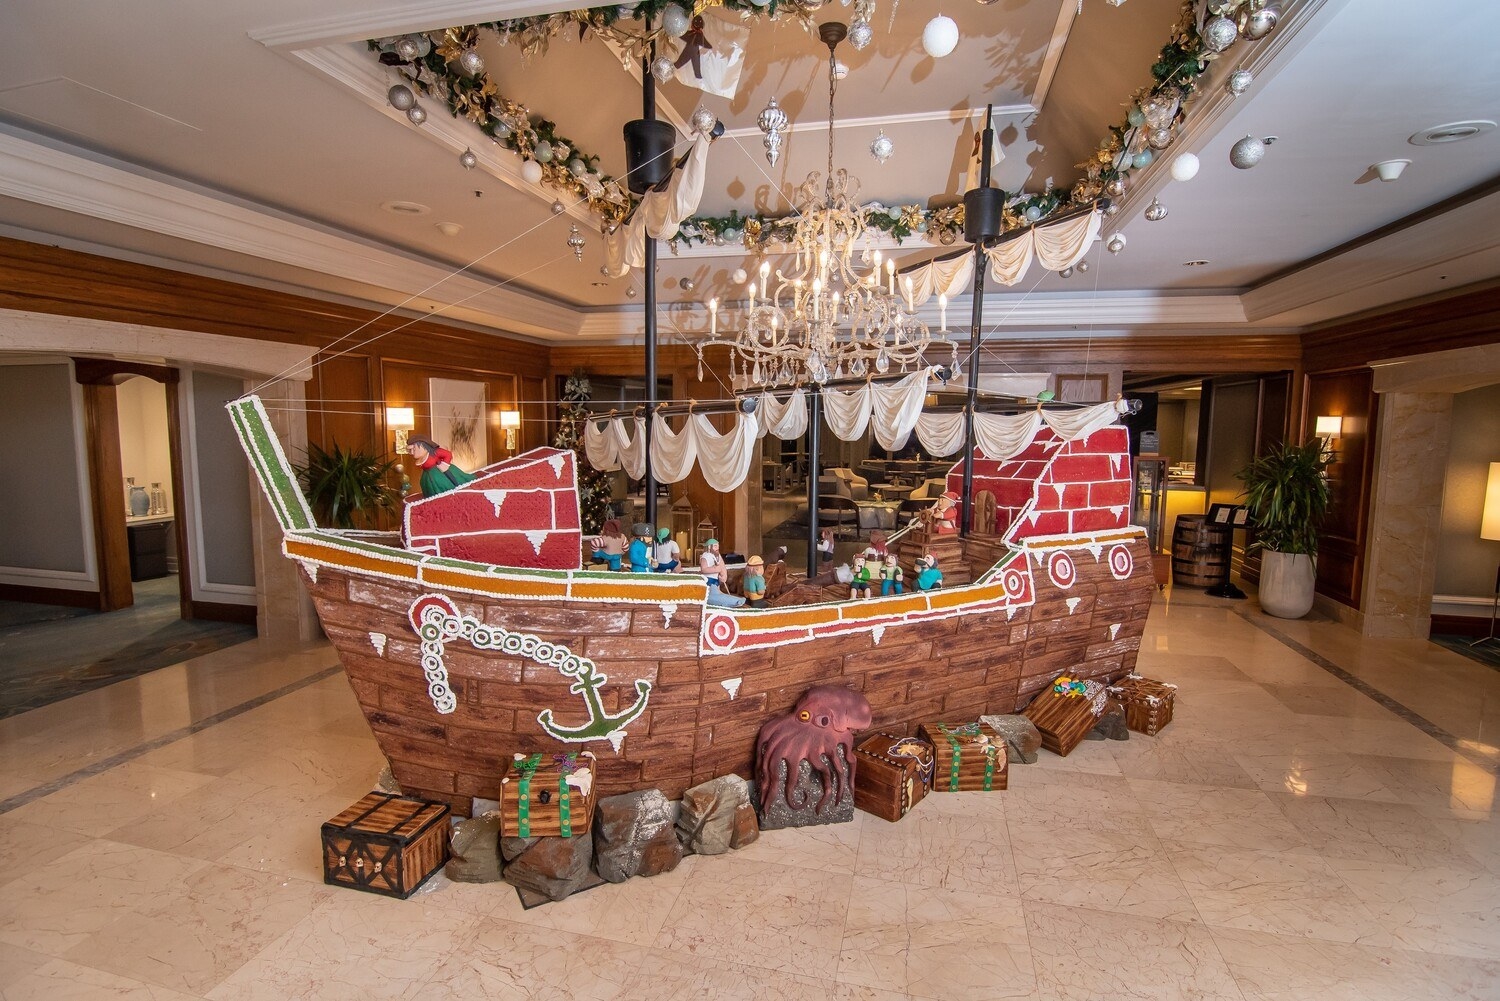 A gingerbread pirate ship